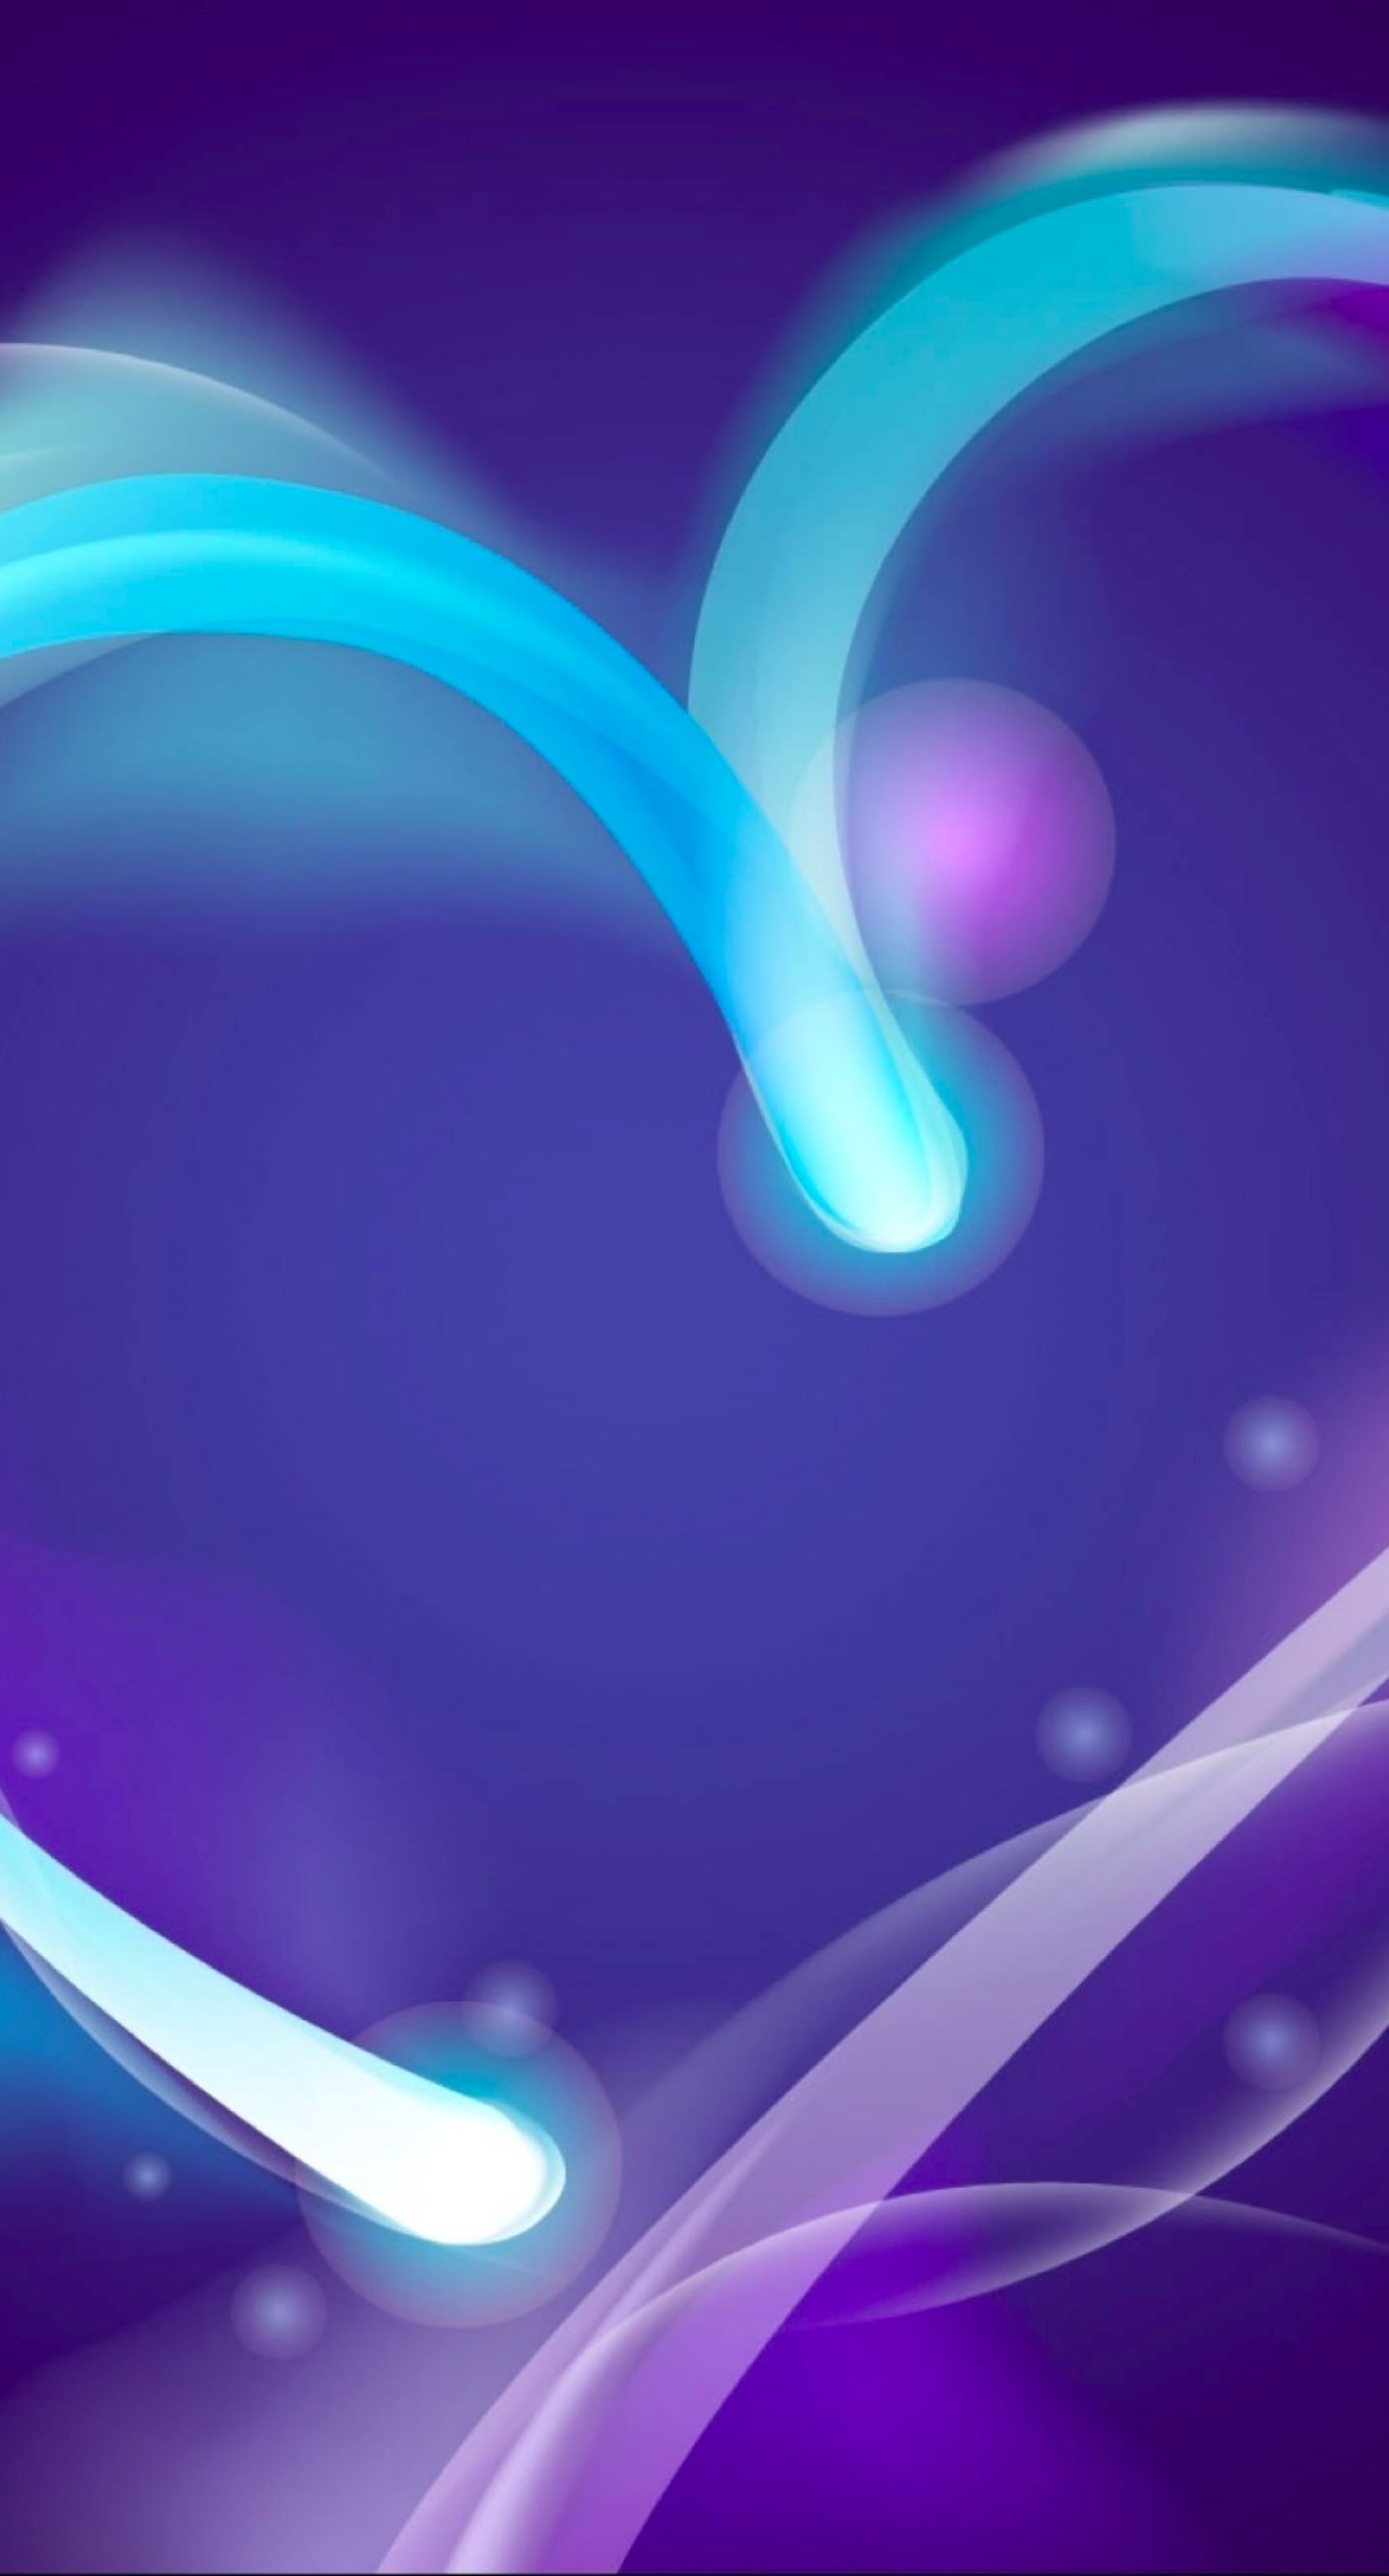 Hình nền tim màu tím đáng yêu trên chiếc điện thoại iPhone 7Plus của bạn sẽ khiến nó trở nên thật đặc biệt. Với đường nét tinh tế và màu sắc tươi sáng, bạn sẽ cảm thấy hạnh phúc khi nhìn vào màn hình chứa đựng hình nền này. Hãy tải ngay và để chiếc điện thoại trở nên thêm phần đáng yêu nhé!